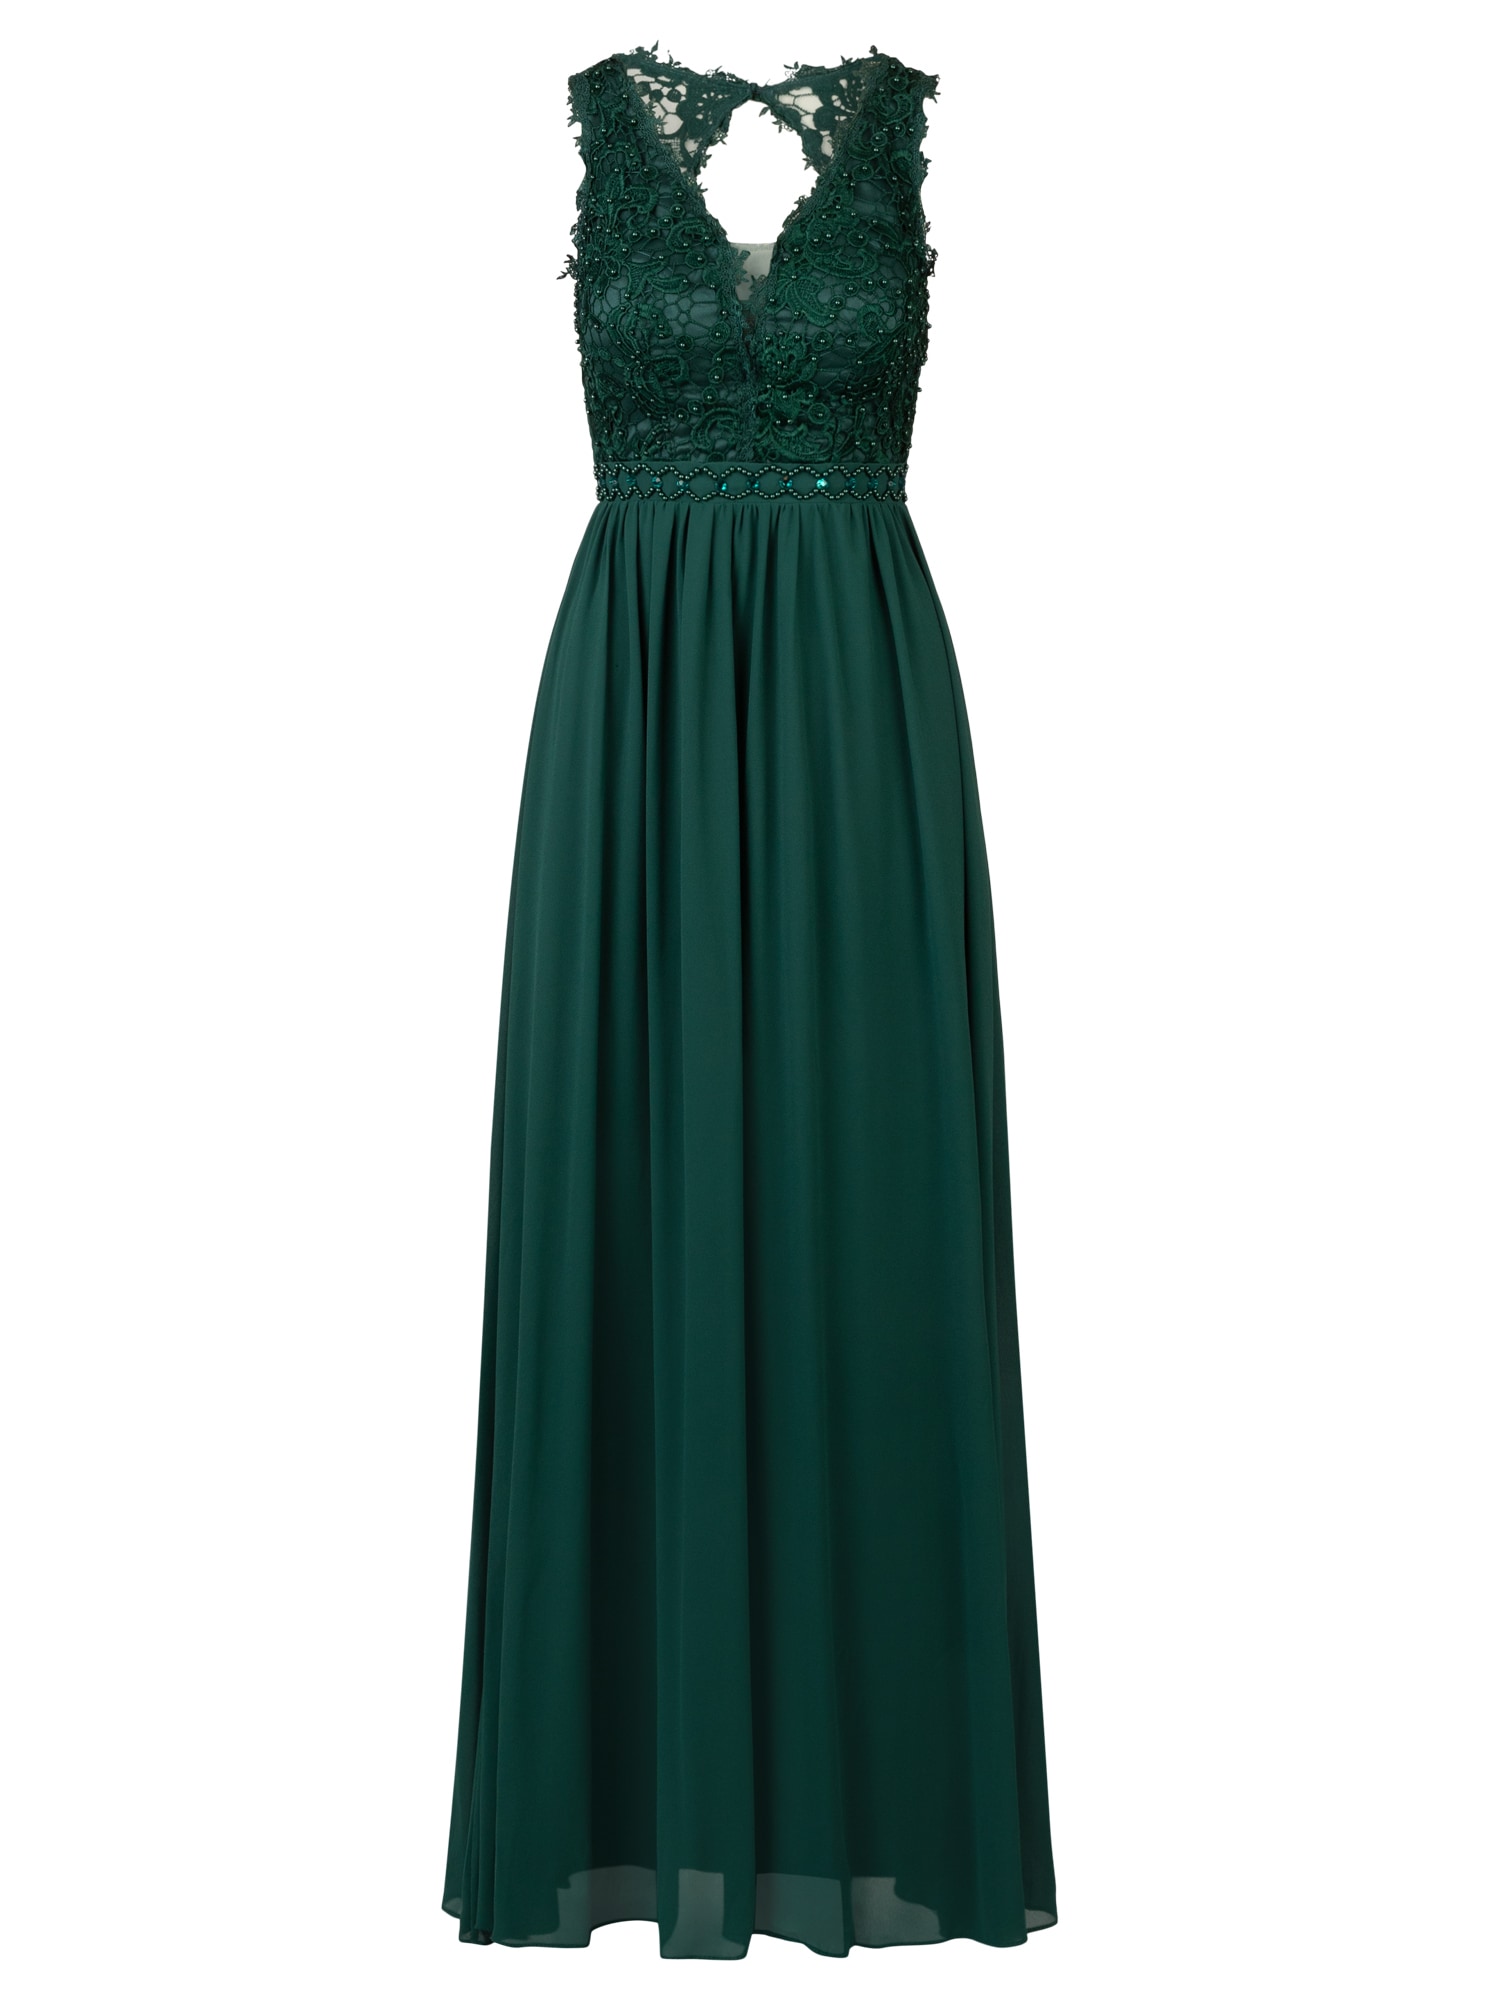 APART Vakarinė suknelė smaragdinė spalva